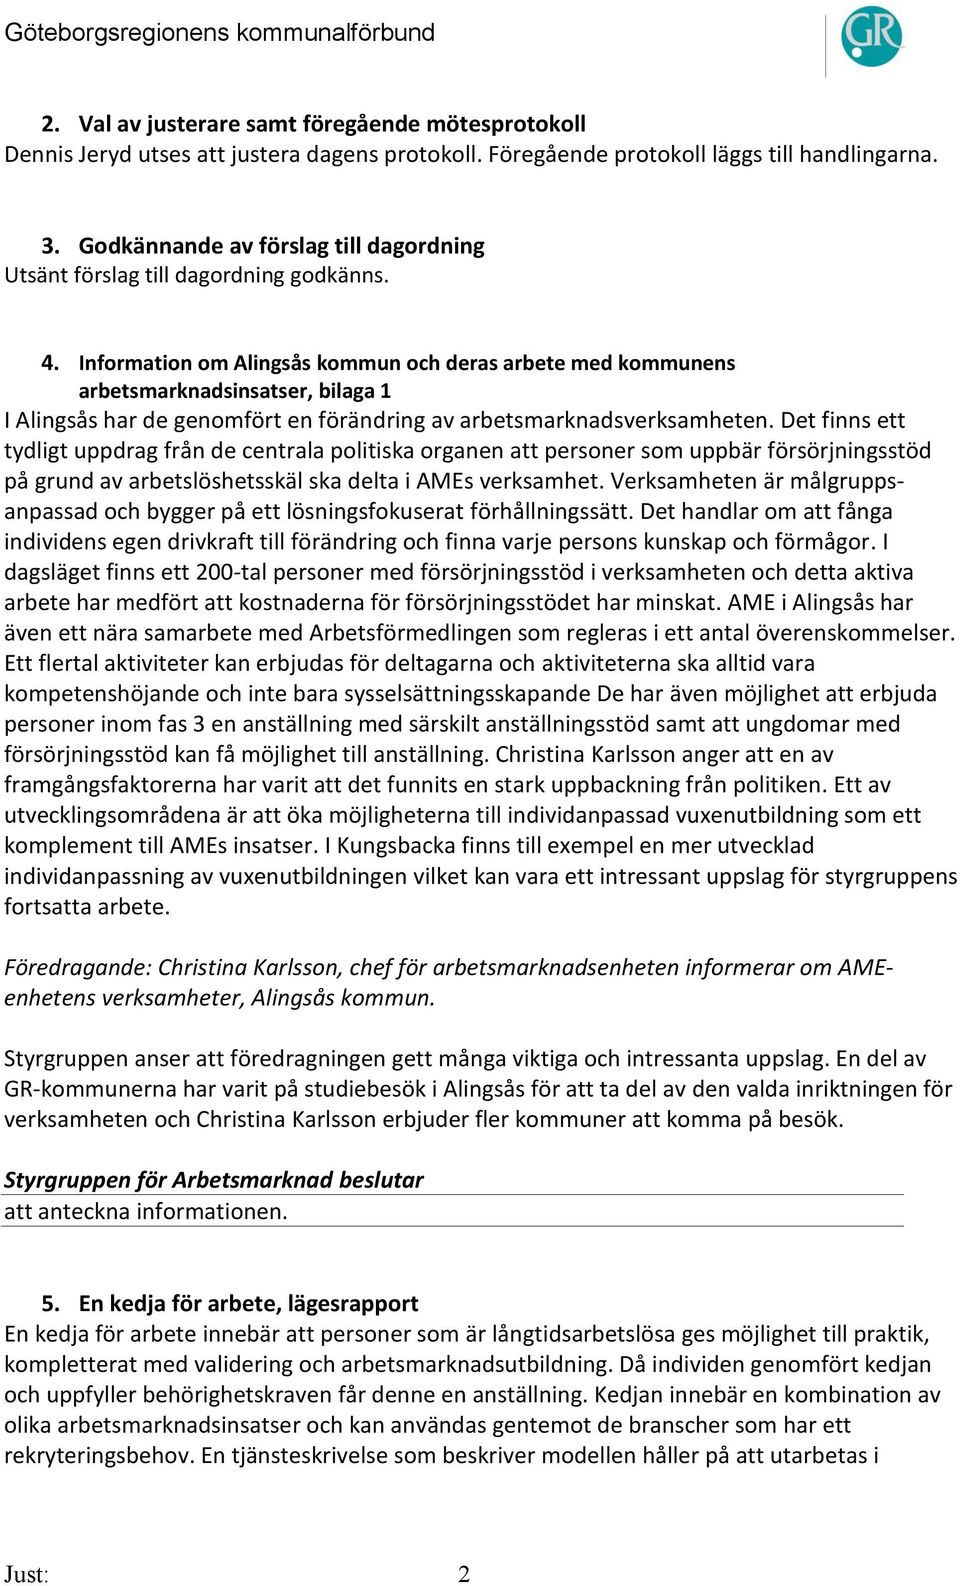 Information om Alingsås kommun och deras arbete med kommunens arbetsmarknadsinsatser, bilaga 1 I Alingsås har de genomfört en förändring av arbetsmarknadsverksamheten.